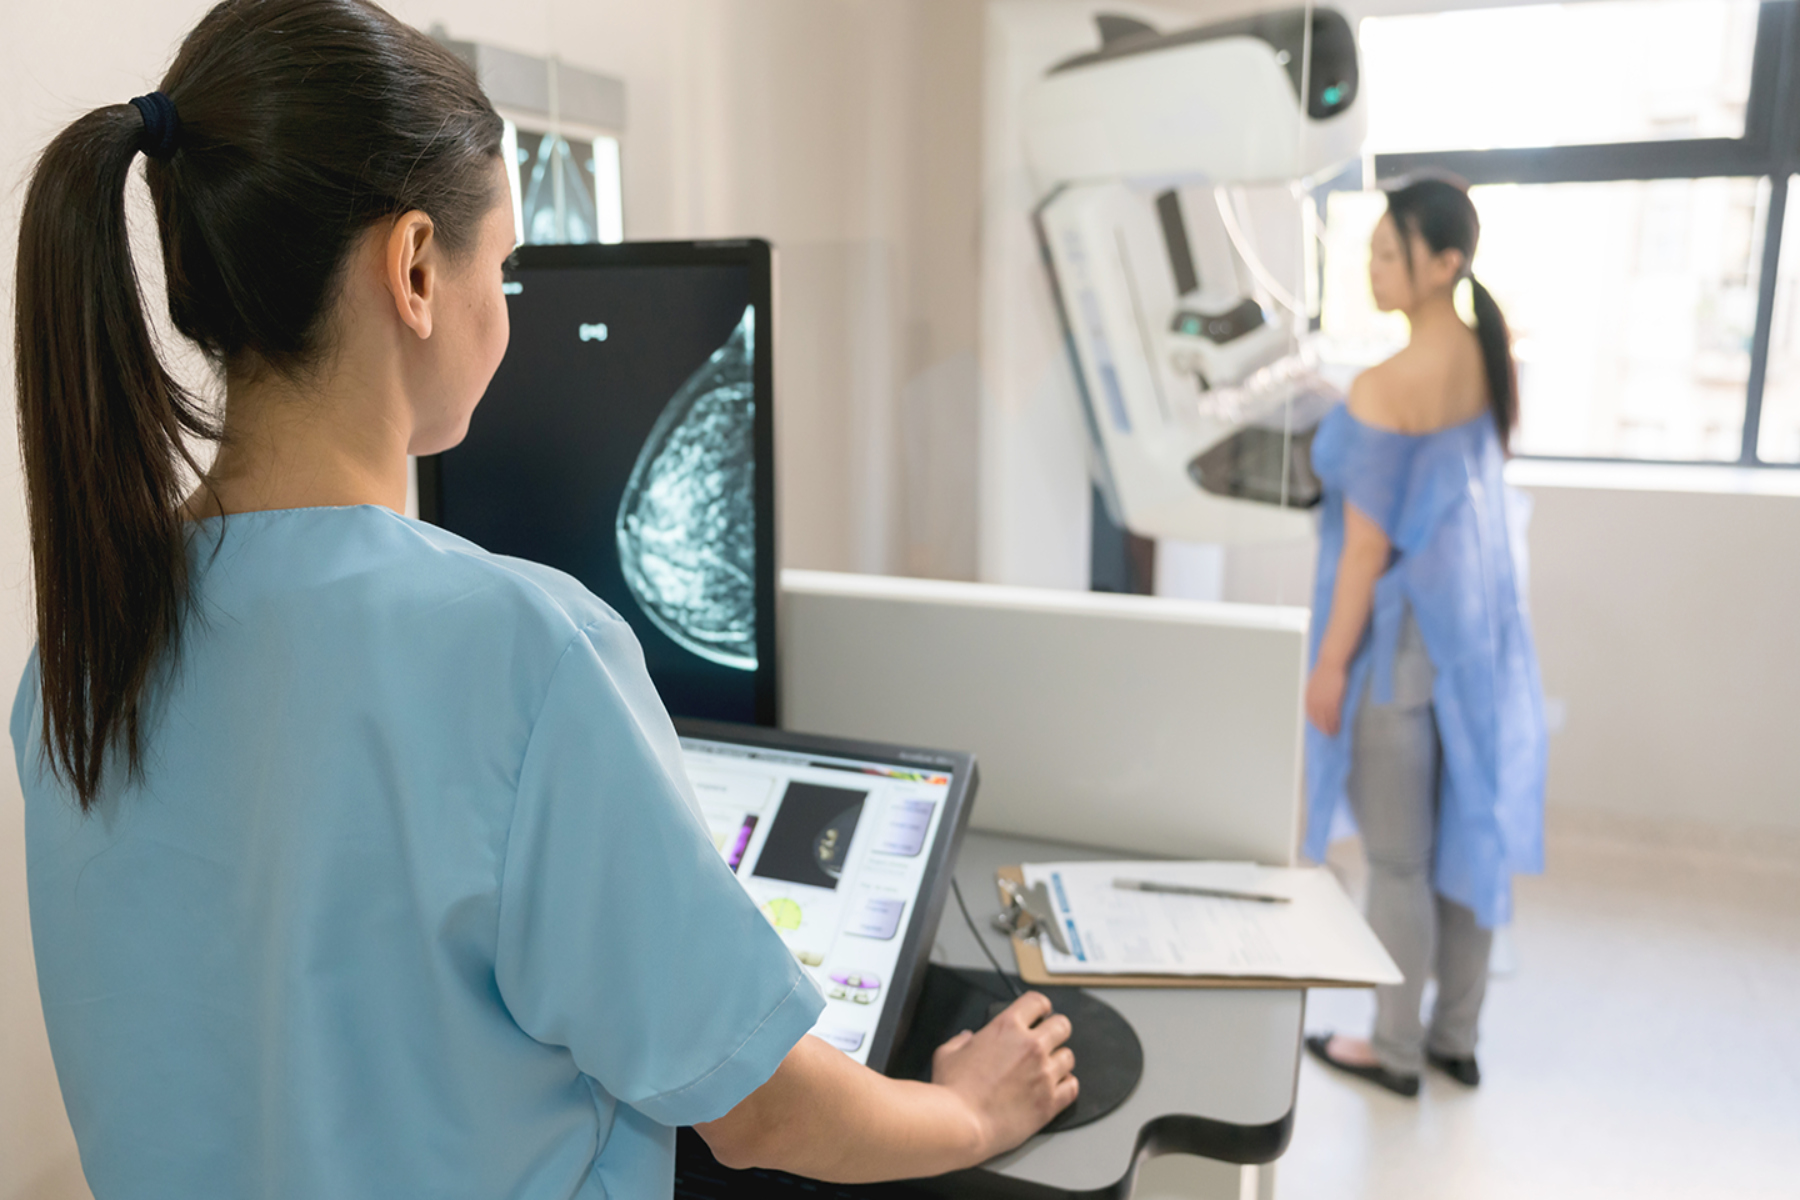 Μαστογραφία: Ο προληπτικός έλεγχος καρκίνου του μαστού μειώνει τις πιθανότητες θανάτου από τη νόσο κατά 72%